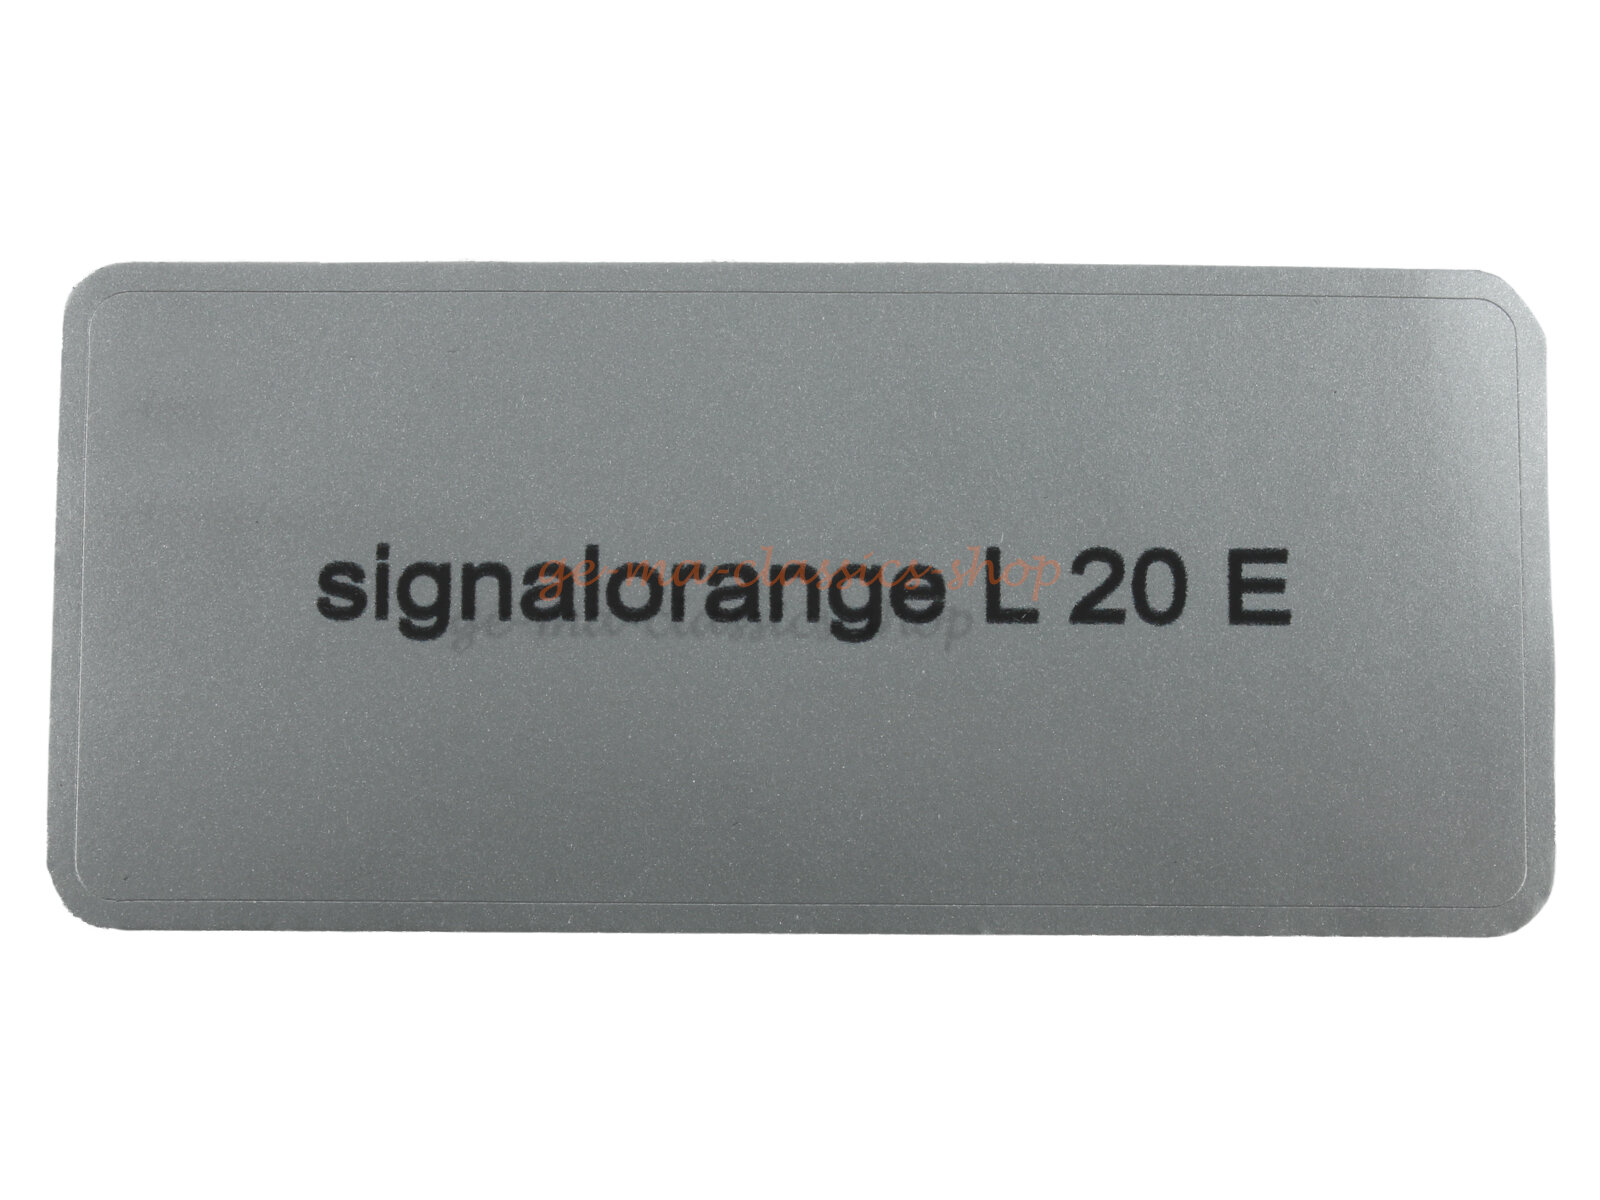 Aufkleber "signalorange L 20 E" Farbcode Sticker